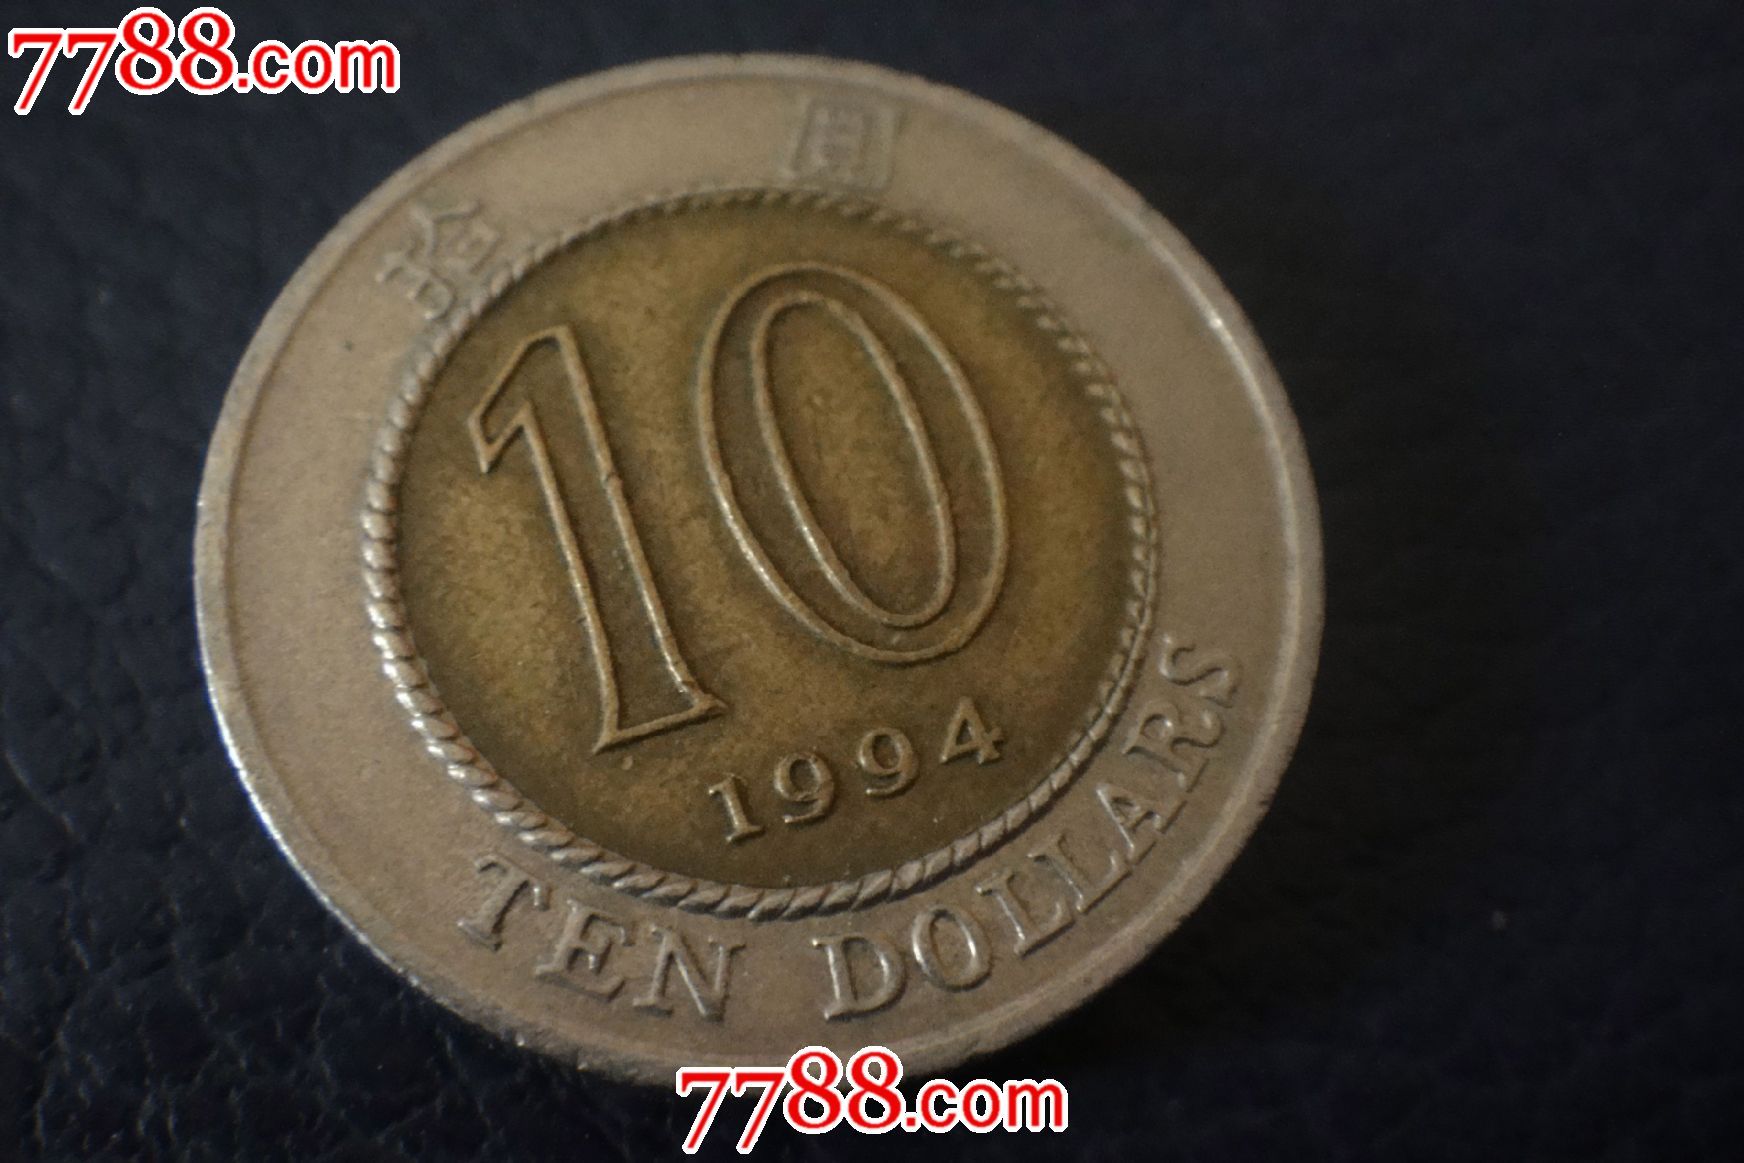 1994年香港10元硬币